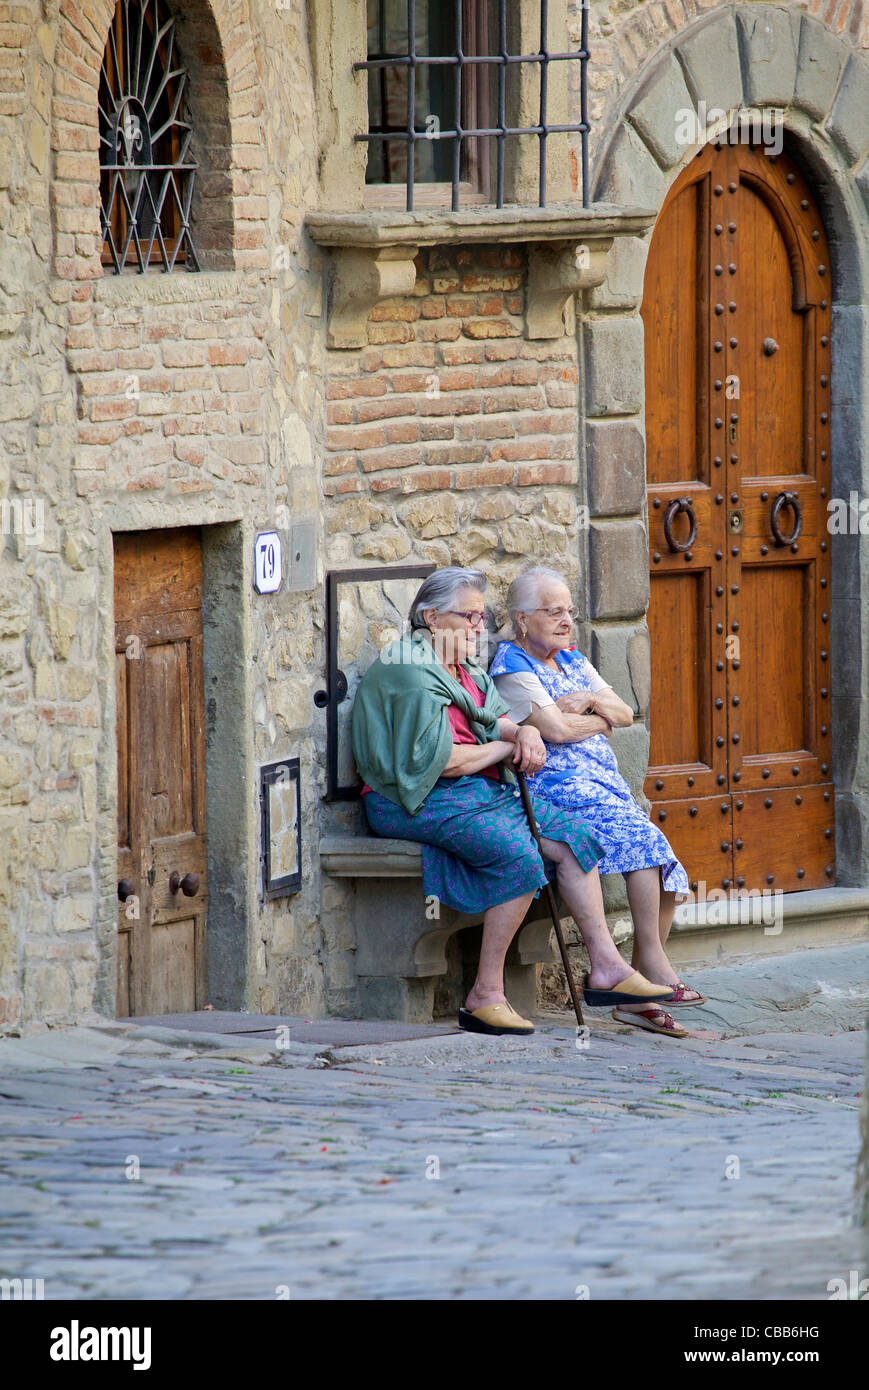 Les femmes âgées appréciant les choses simples de la vie Banque D'Images